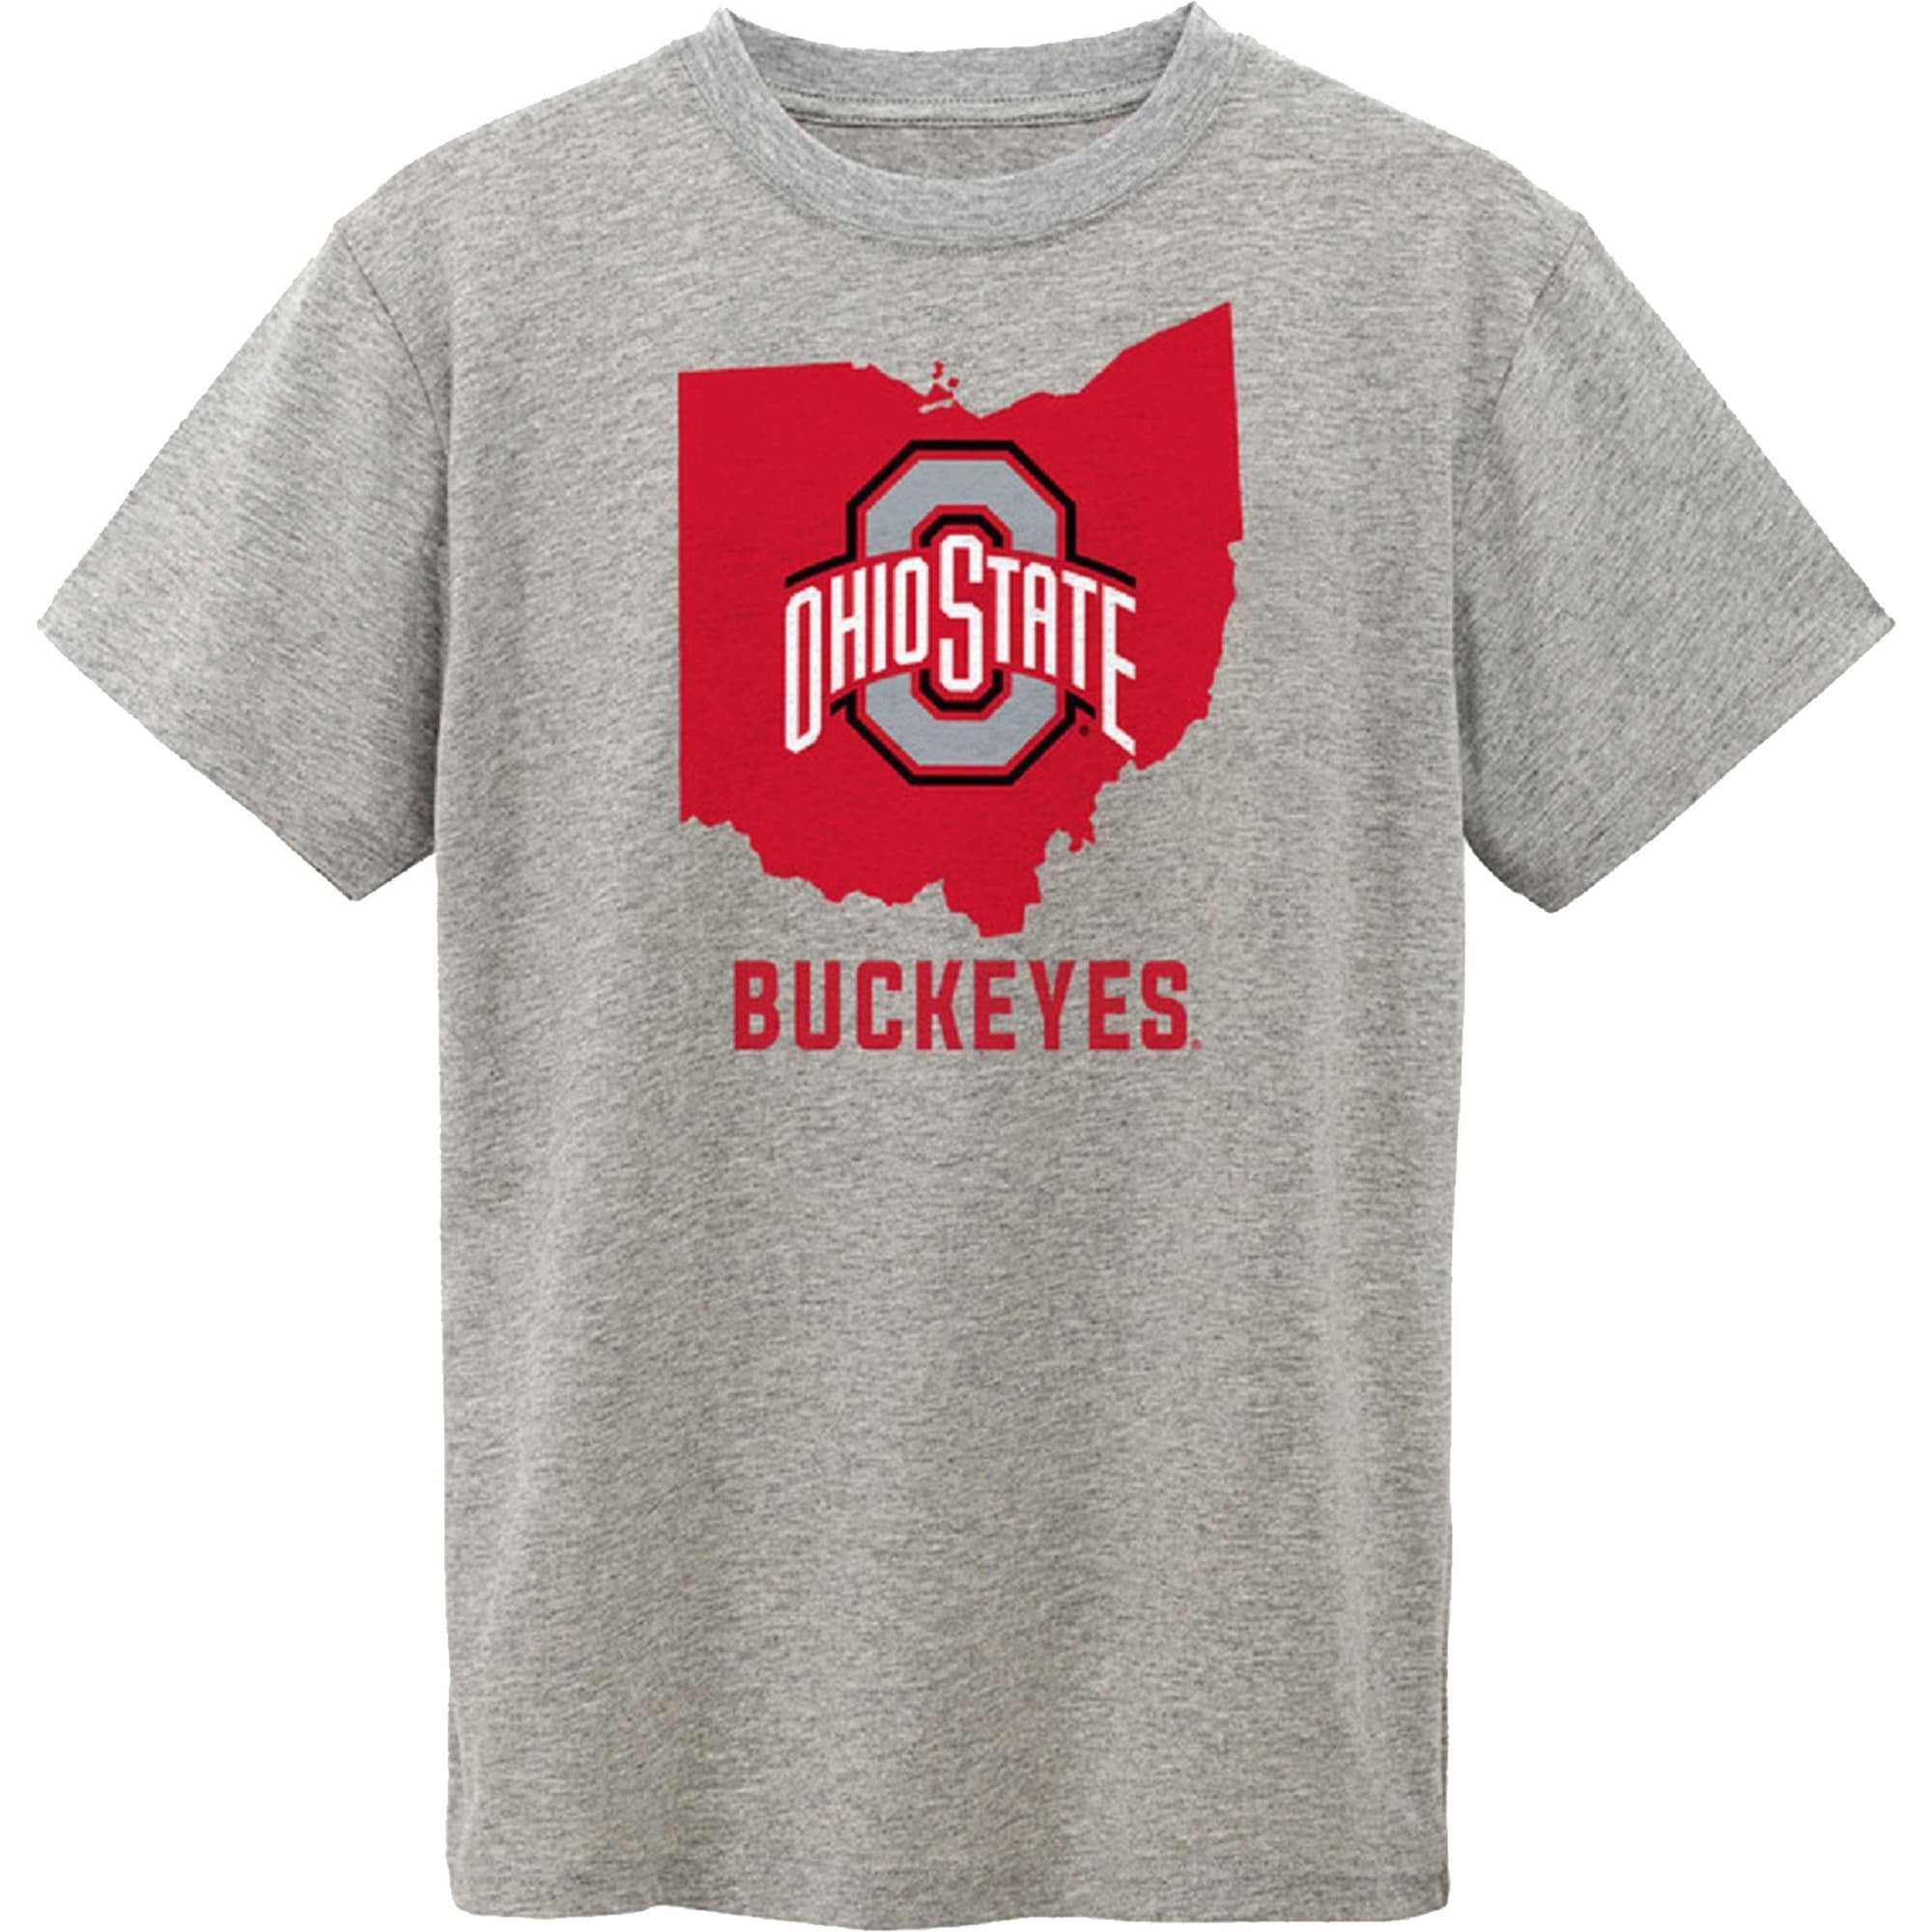 Ohio State Buckeyes Toddler State T-Shirt - Gray - Walmart.com